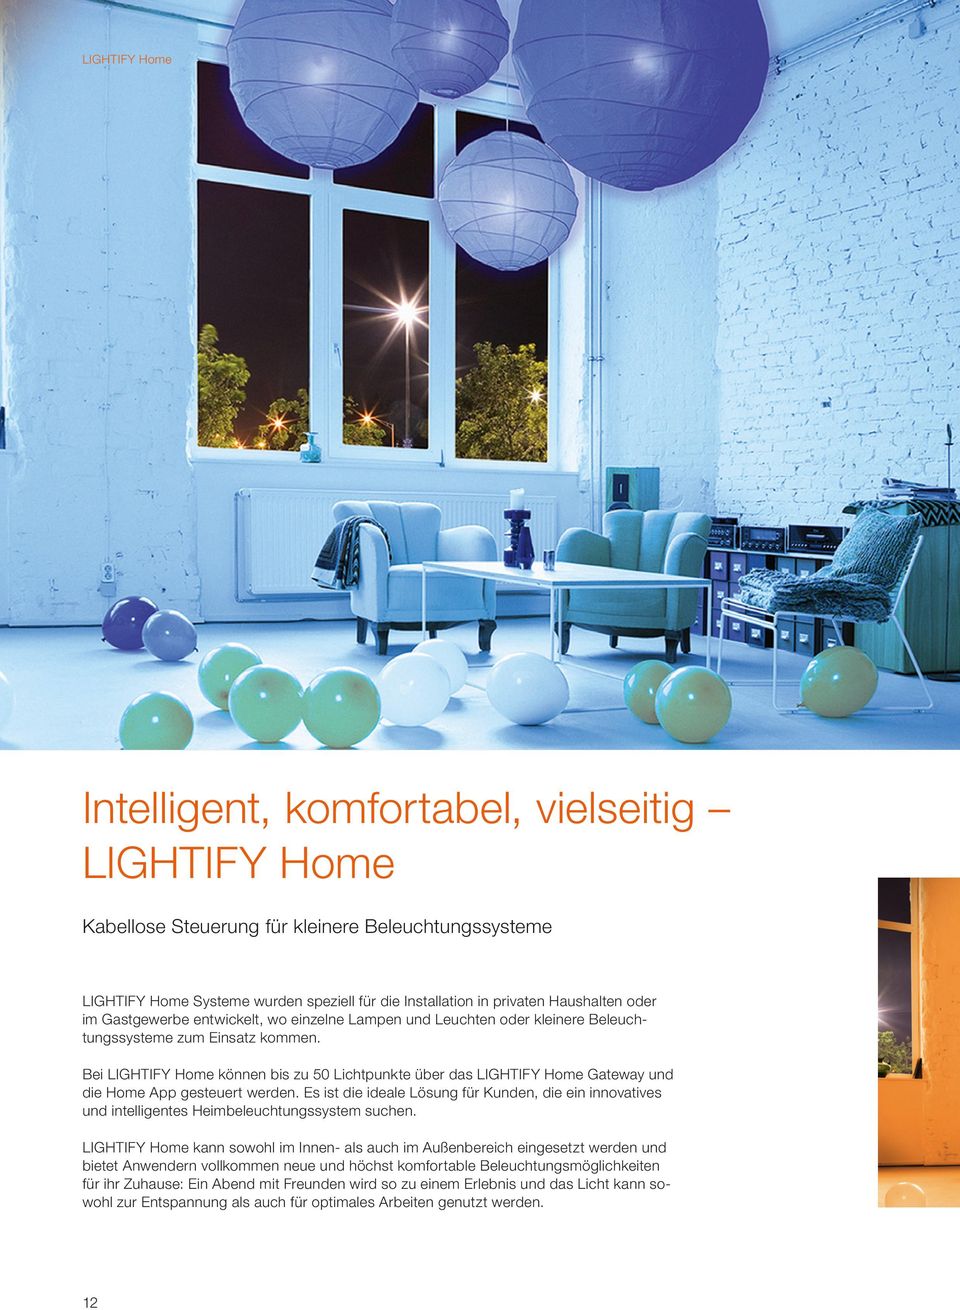 Bei LIGHTIFY Home können bis zu 50 Lichtpunkte über das LIGHTIFY Home Gateway und die Home App gesteuert werden.